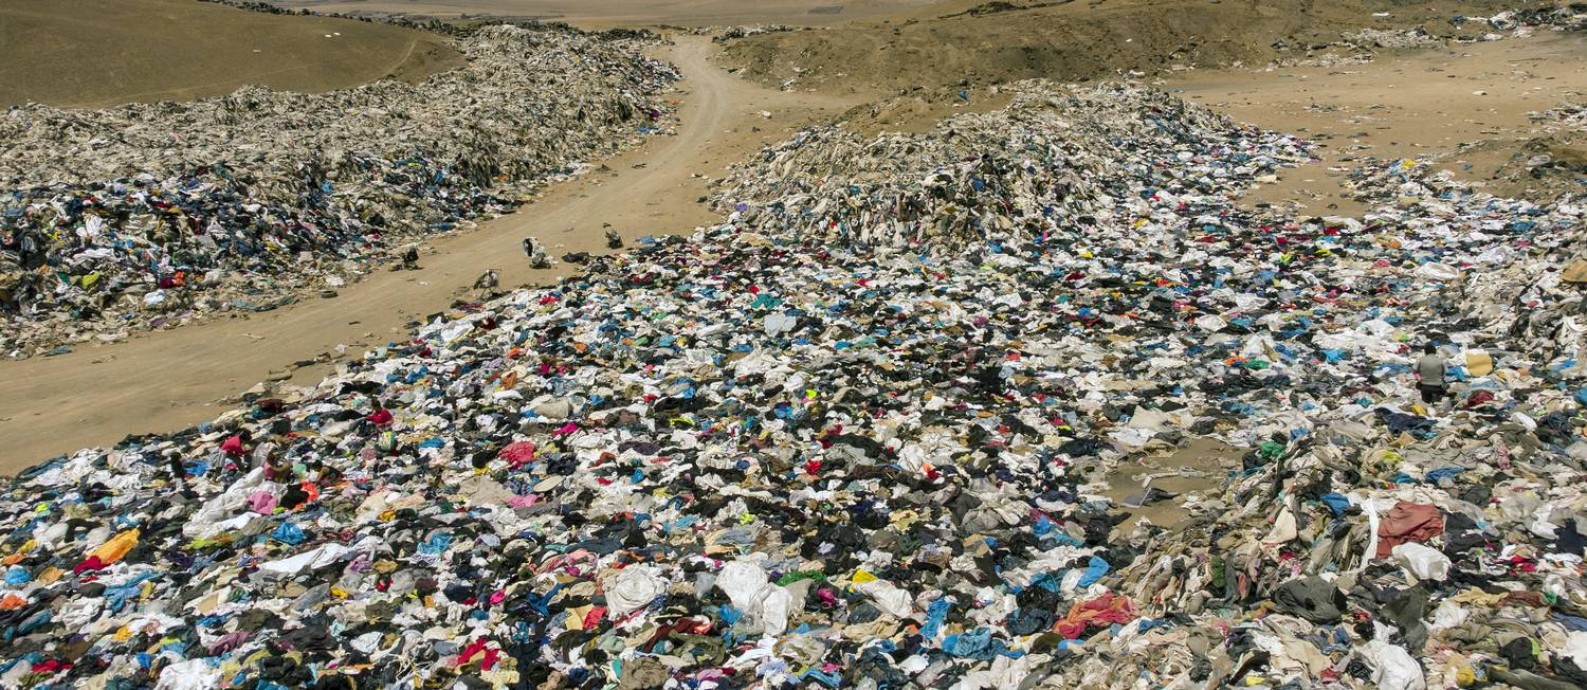 Vista das roupas usadas expostas no deserto do Atacama Foto: Martini Bernetti / AFP